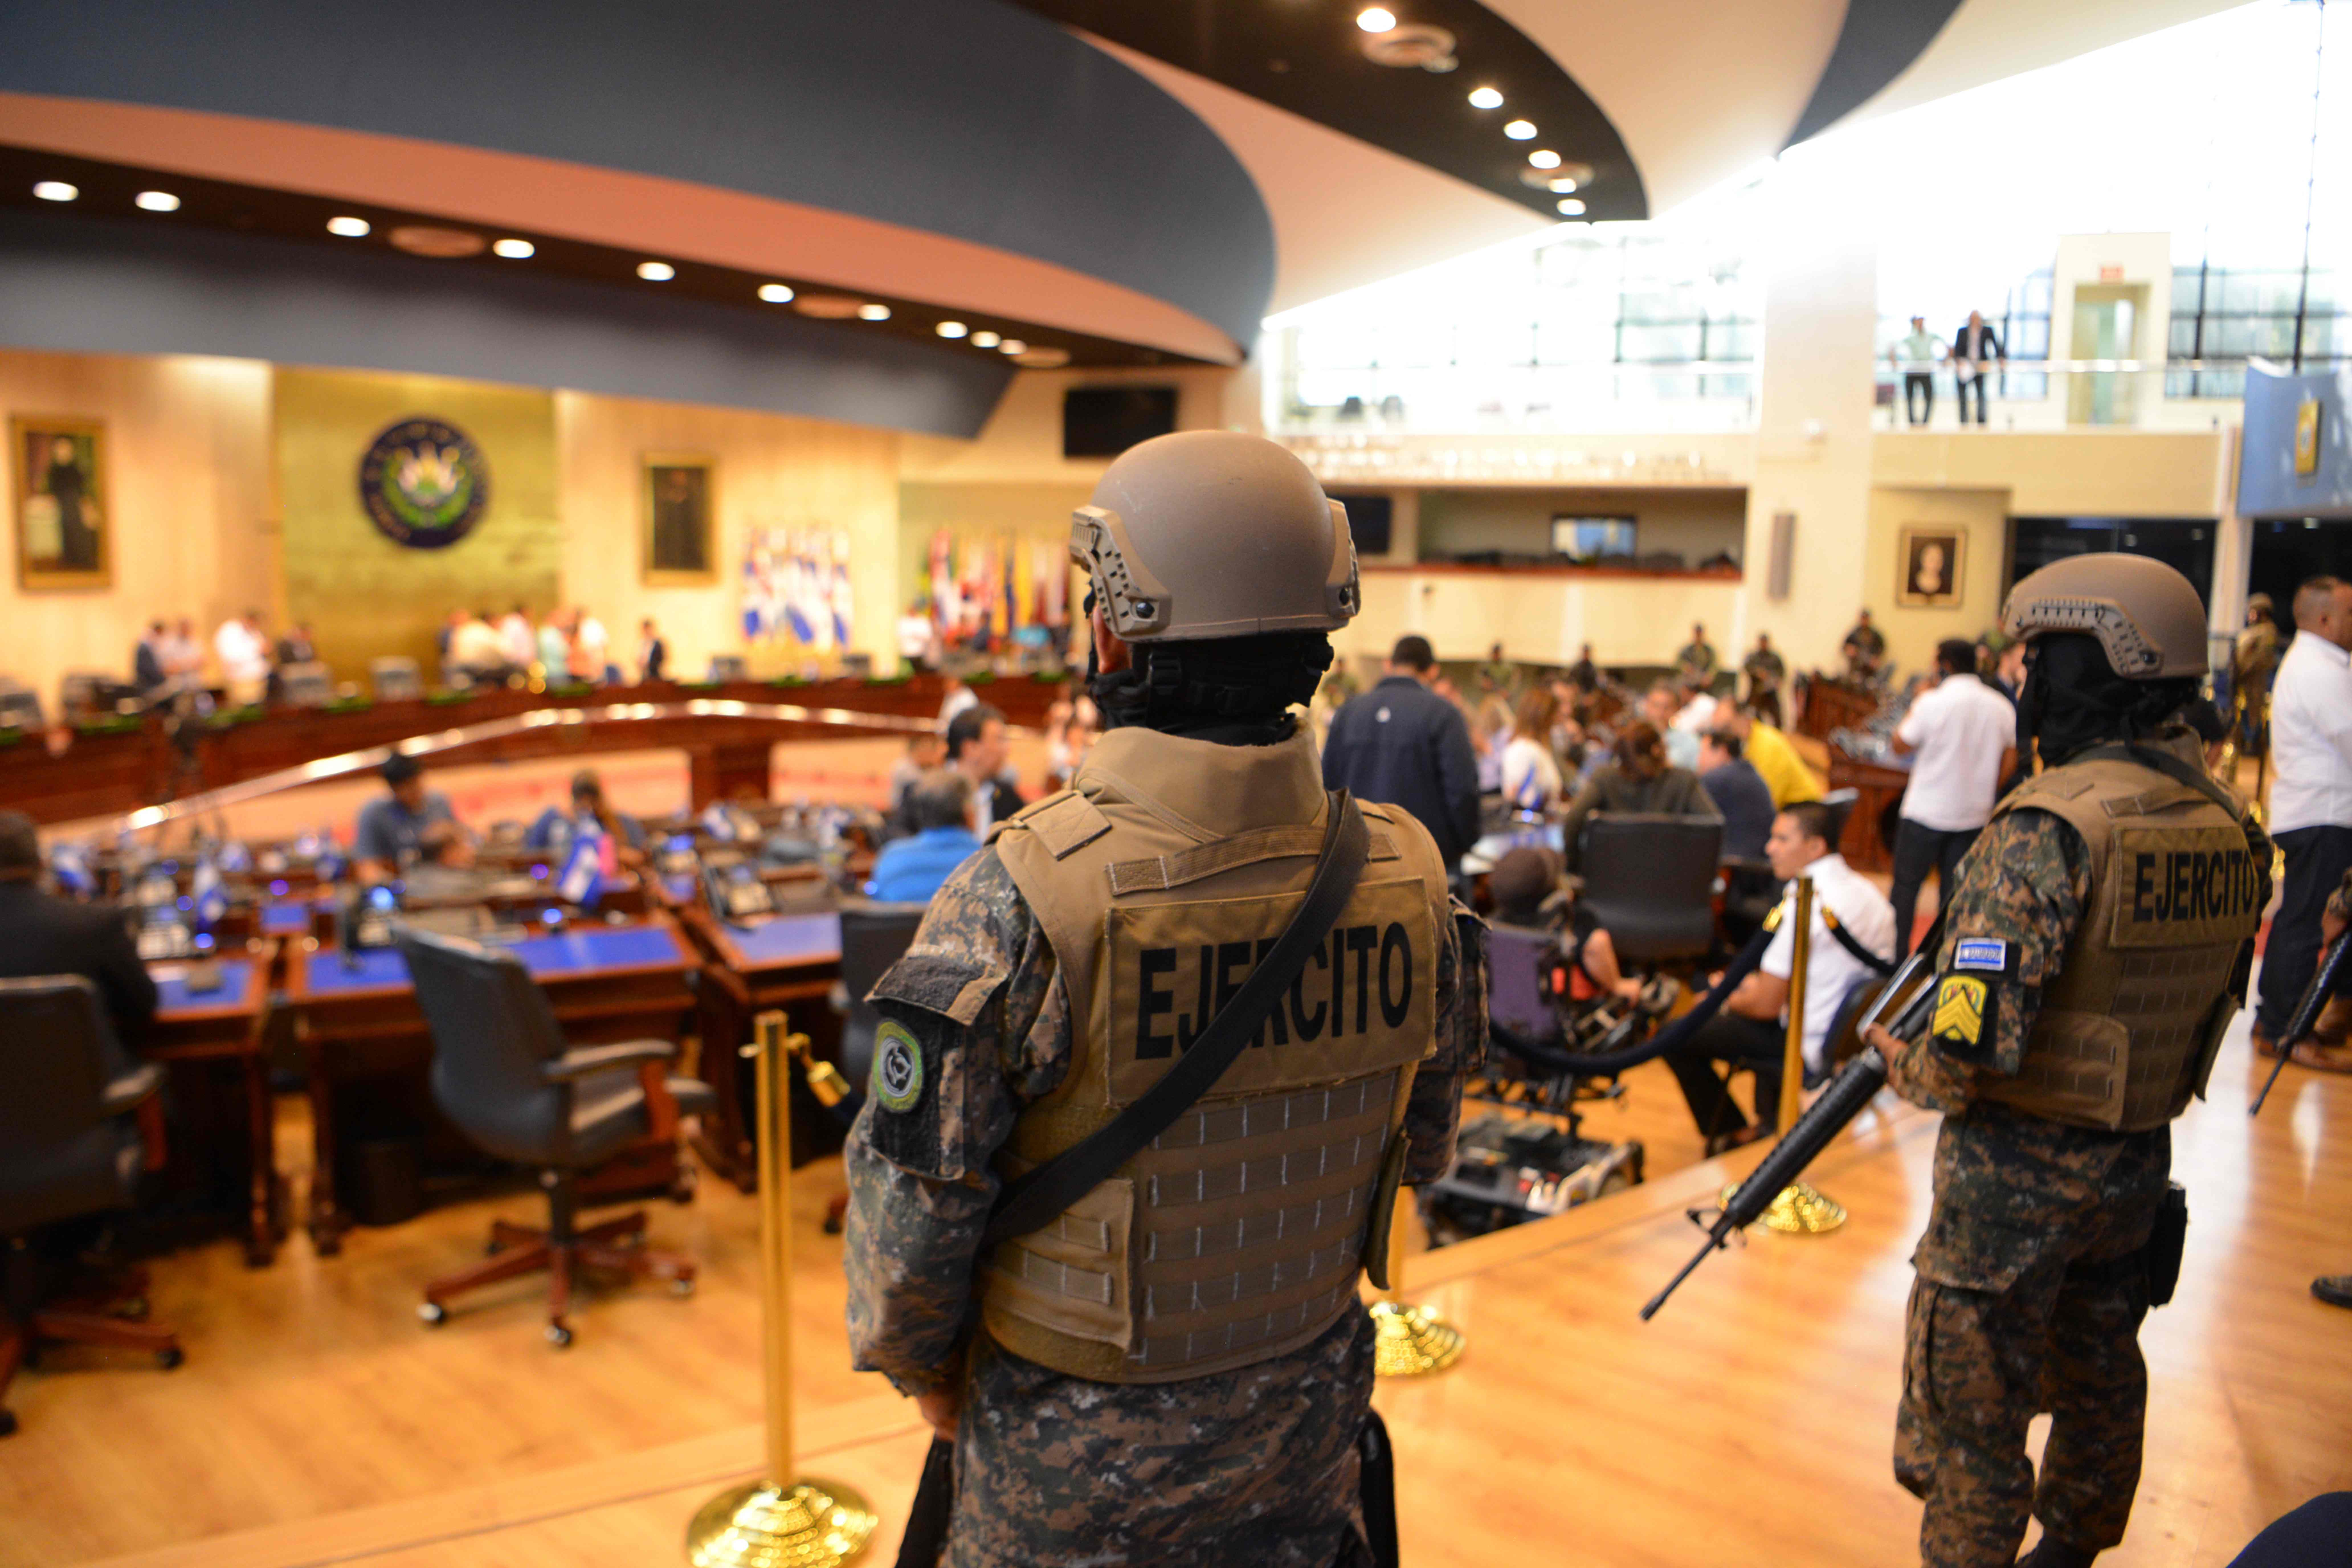 Los miembros de las Fuerzas Armadas salvadoreñas son vistos dentro de la Asamblea Legislativa durante una protesta fuera de la Asamblea Legislativa para presionar a los diputados para que aprueben un préstamo para invertir en seguridad. (Foto Prensa Libre: AFP)